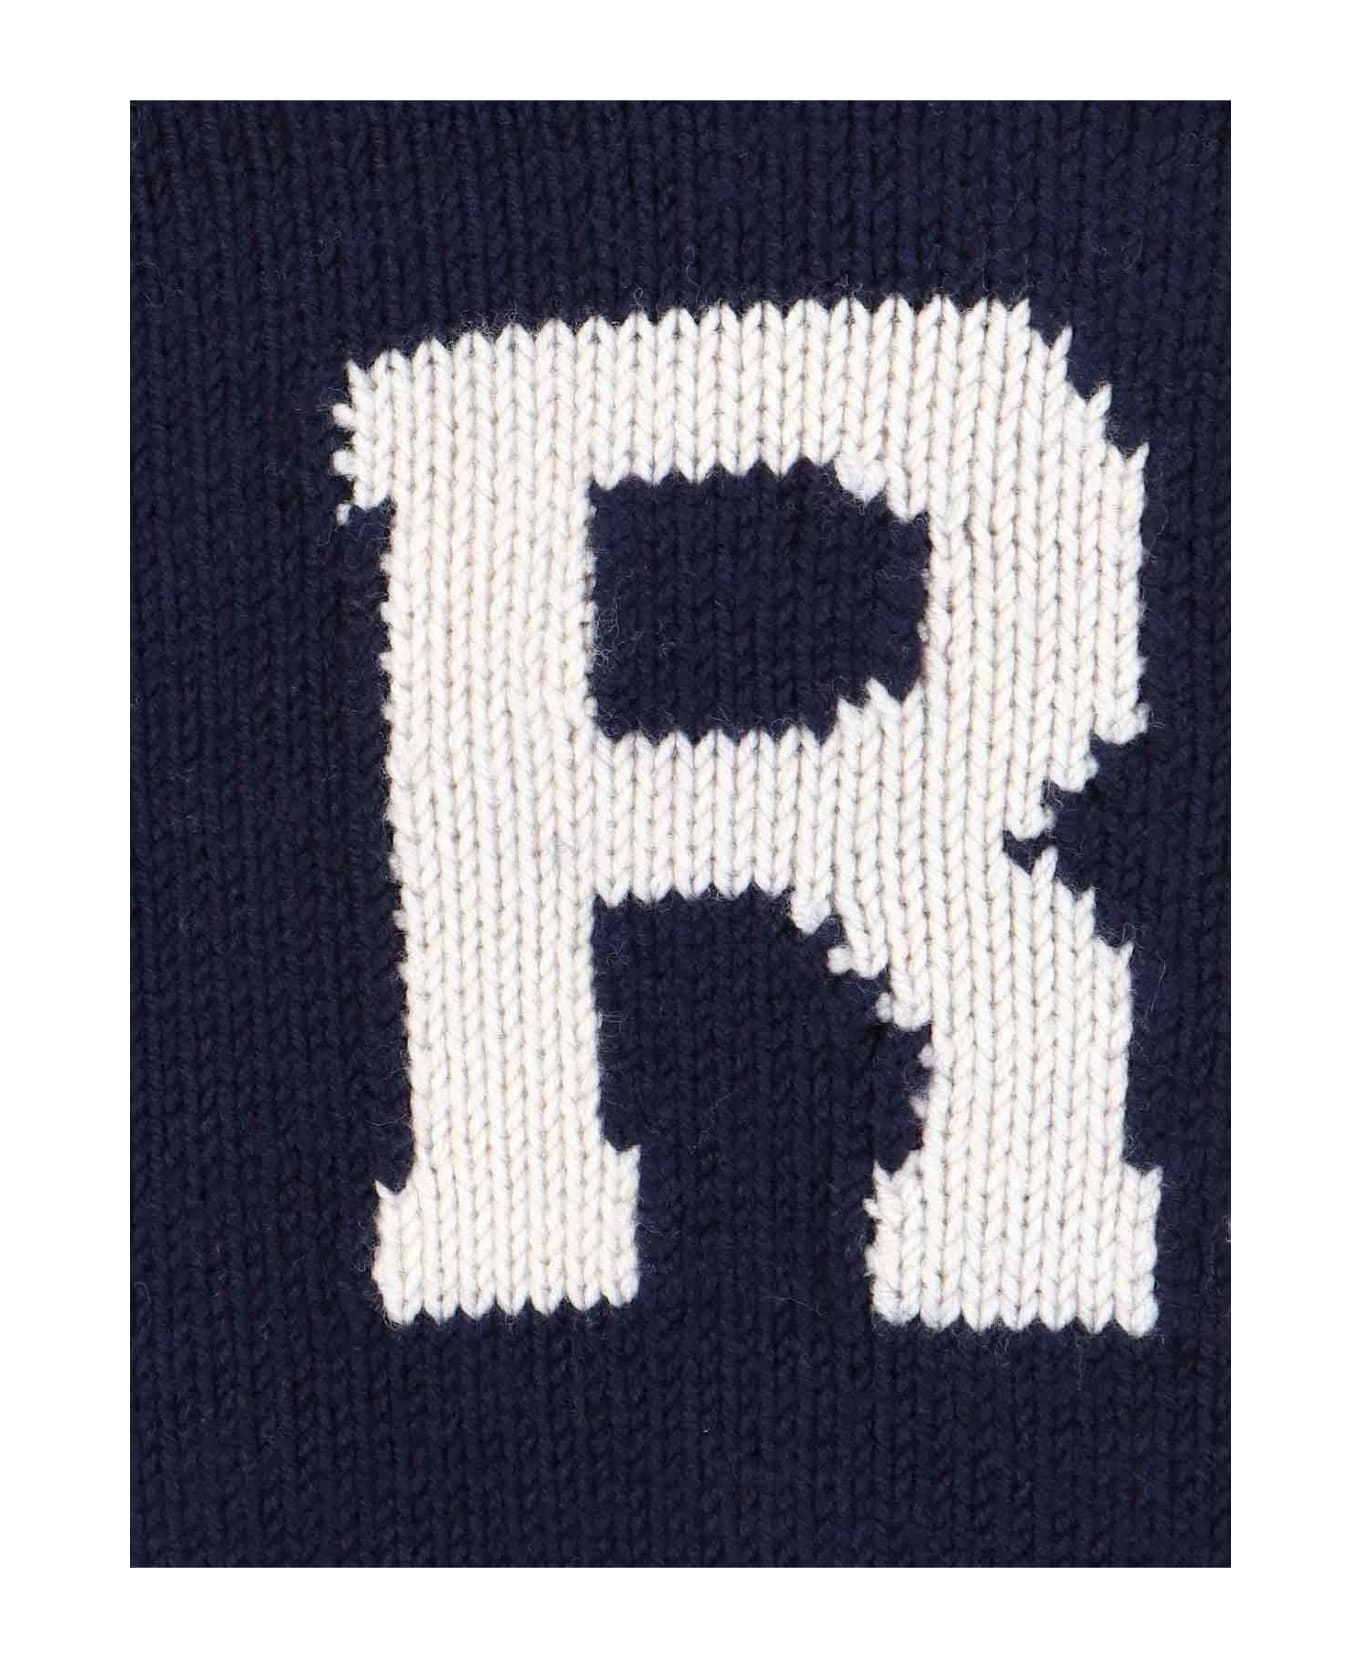 Ralph Lauren Logo Sweater - BLUE